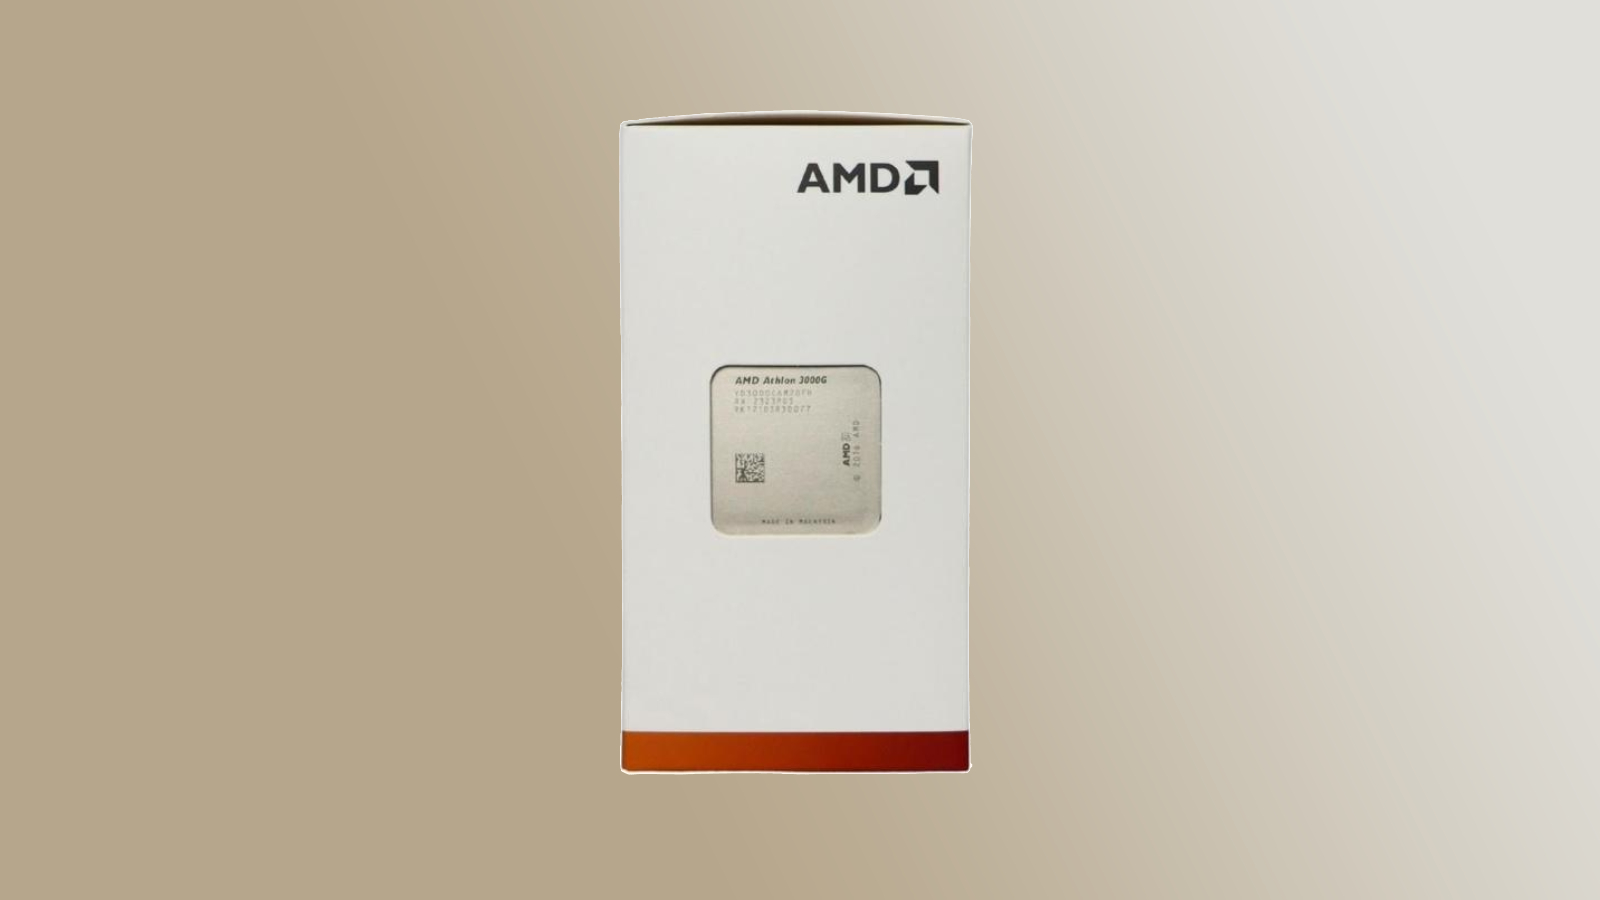 AMD модернизирует 14-нм процессоры Athlon 3000G, которые все еще продаются спустя 4 года после запуска